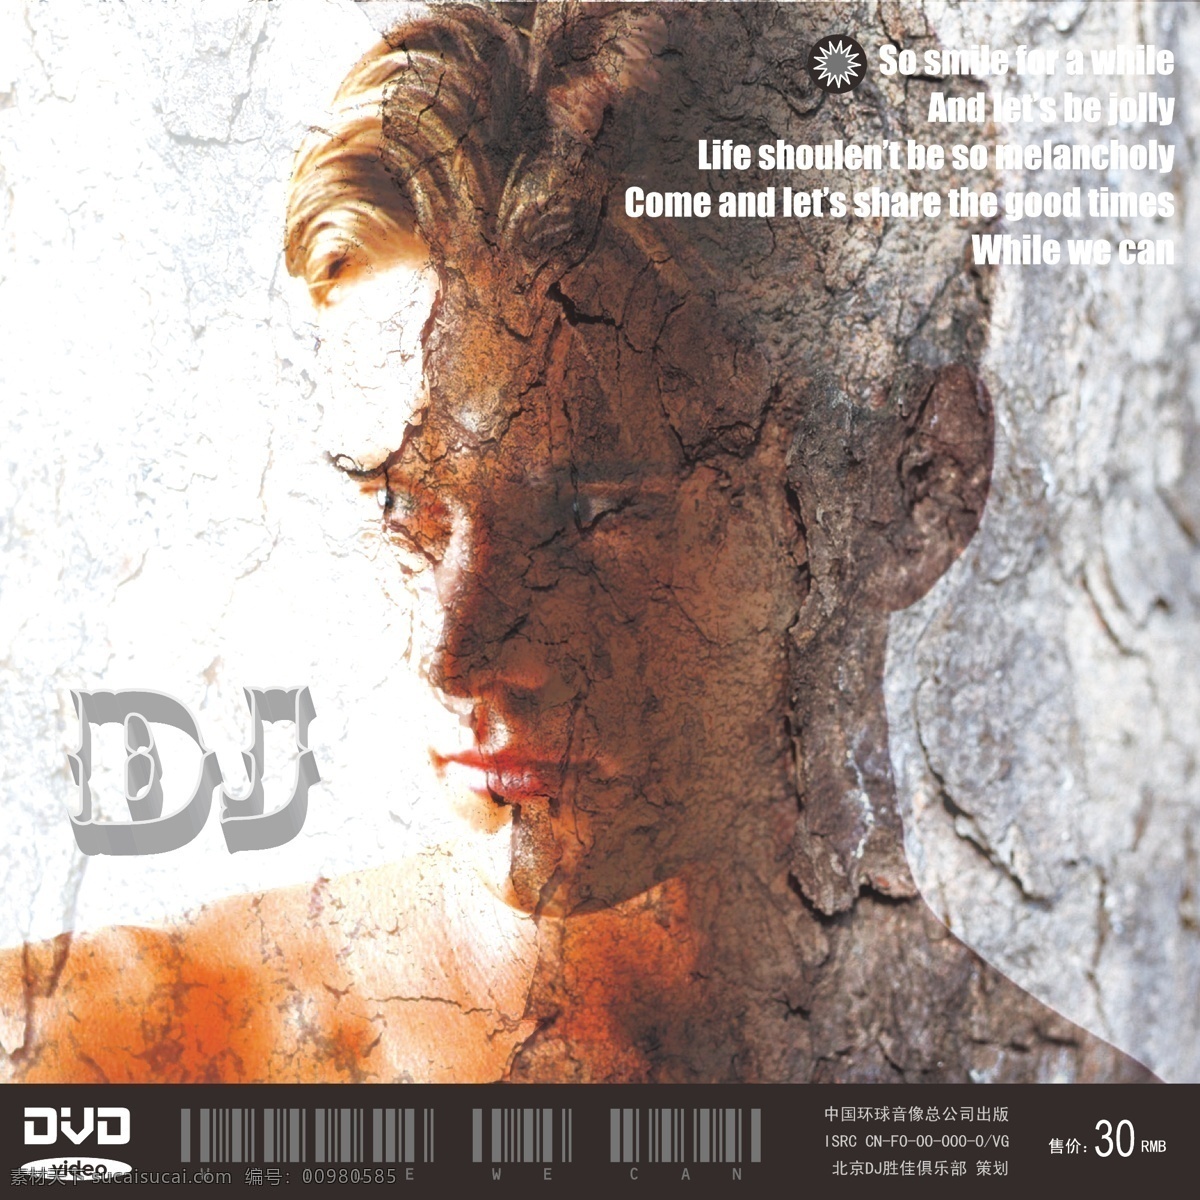 dvd 专辑 封面 cd dj 龟裂效果 ps 男性 荷尔蒙 广告宣传 条形码 英文 酷 模特 男模特 平面设计 包装设计 矢量